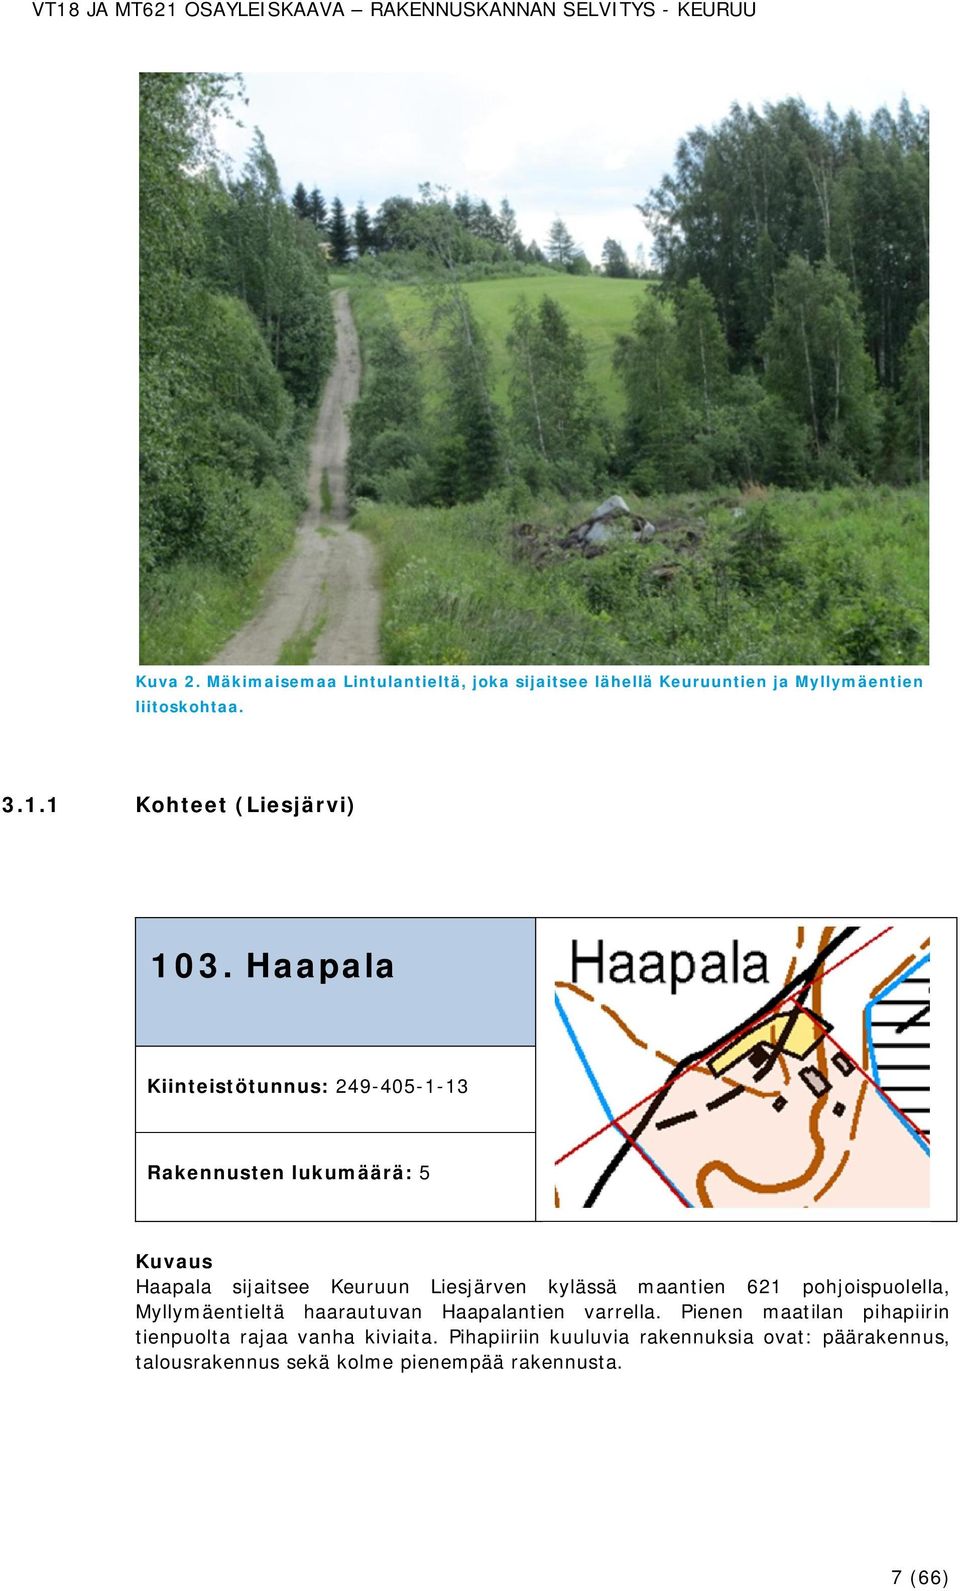 Haapala Kiinteistötunnus: 249-405-1-13 Rakennusten lukumäärä: 5 Haapala sijaitsee Keuruun Liesjärven kylässä maantien 621